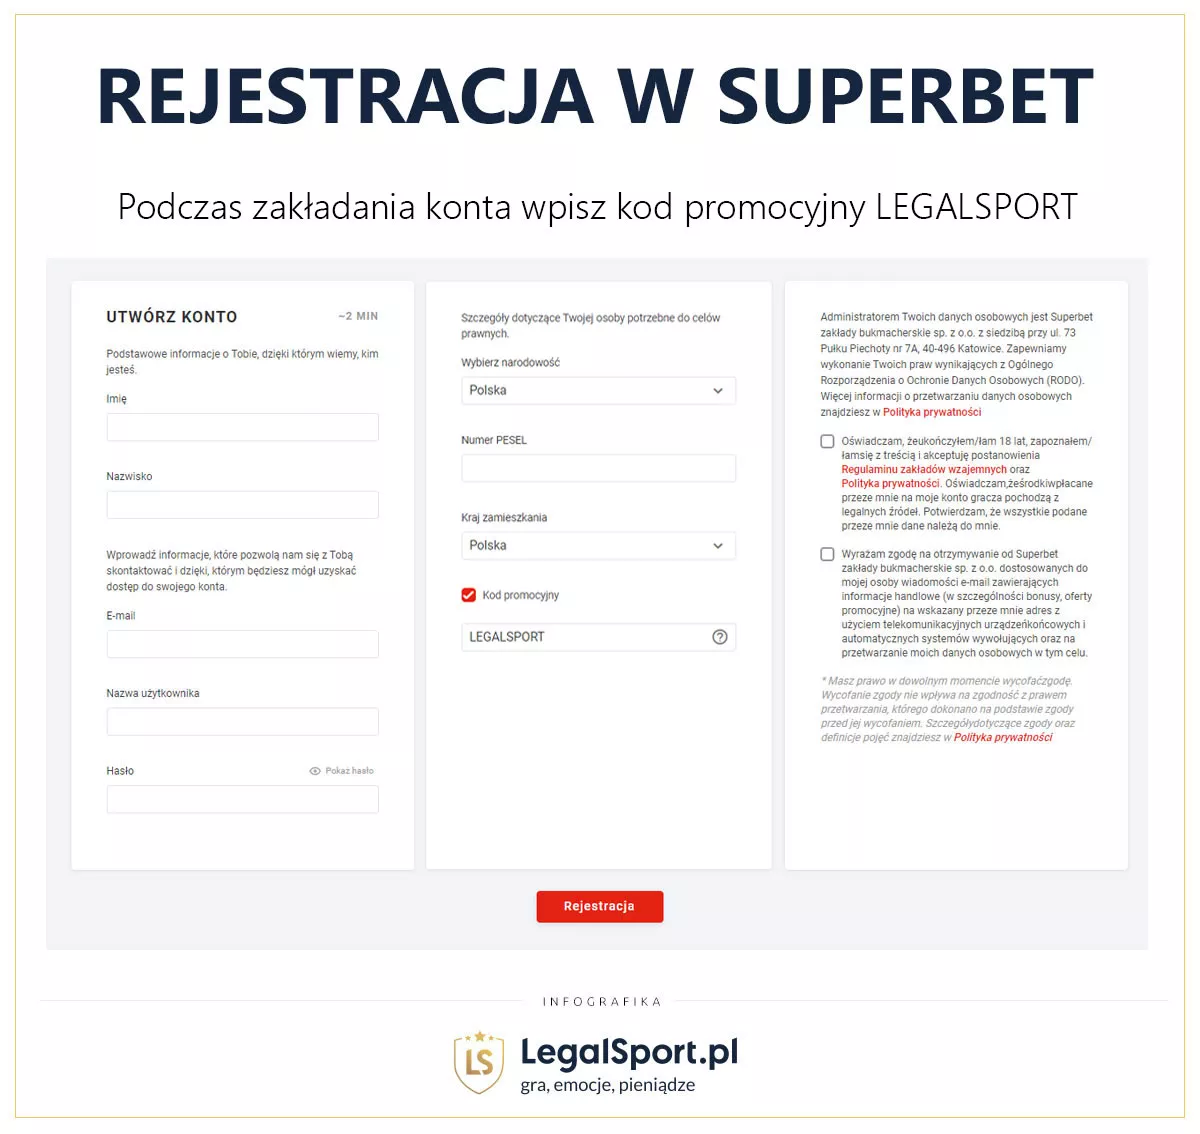 Załóż konto w Superbet i odbierz zwrot 200 zł z naszym kodem LEGALSPORT